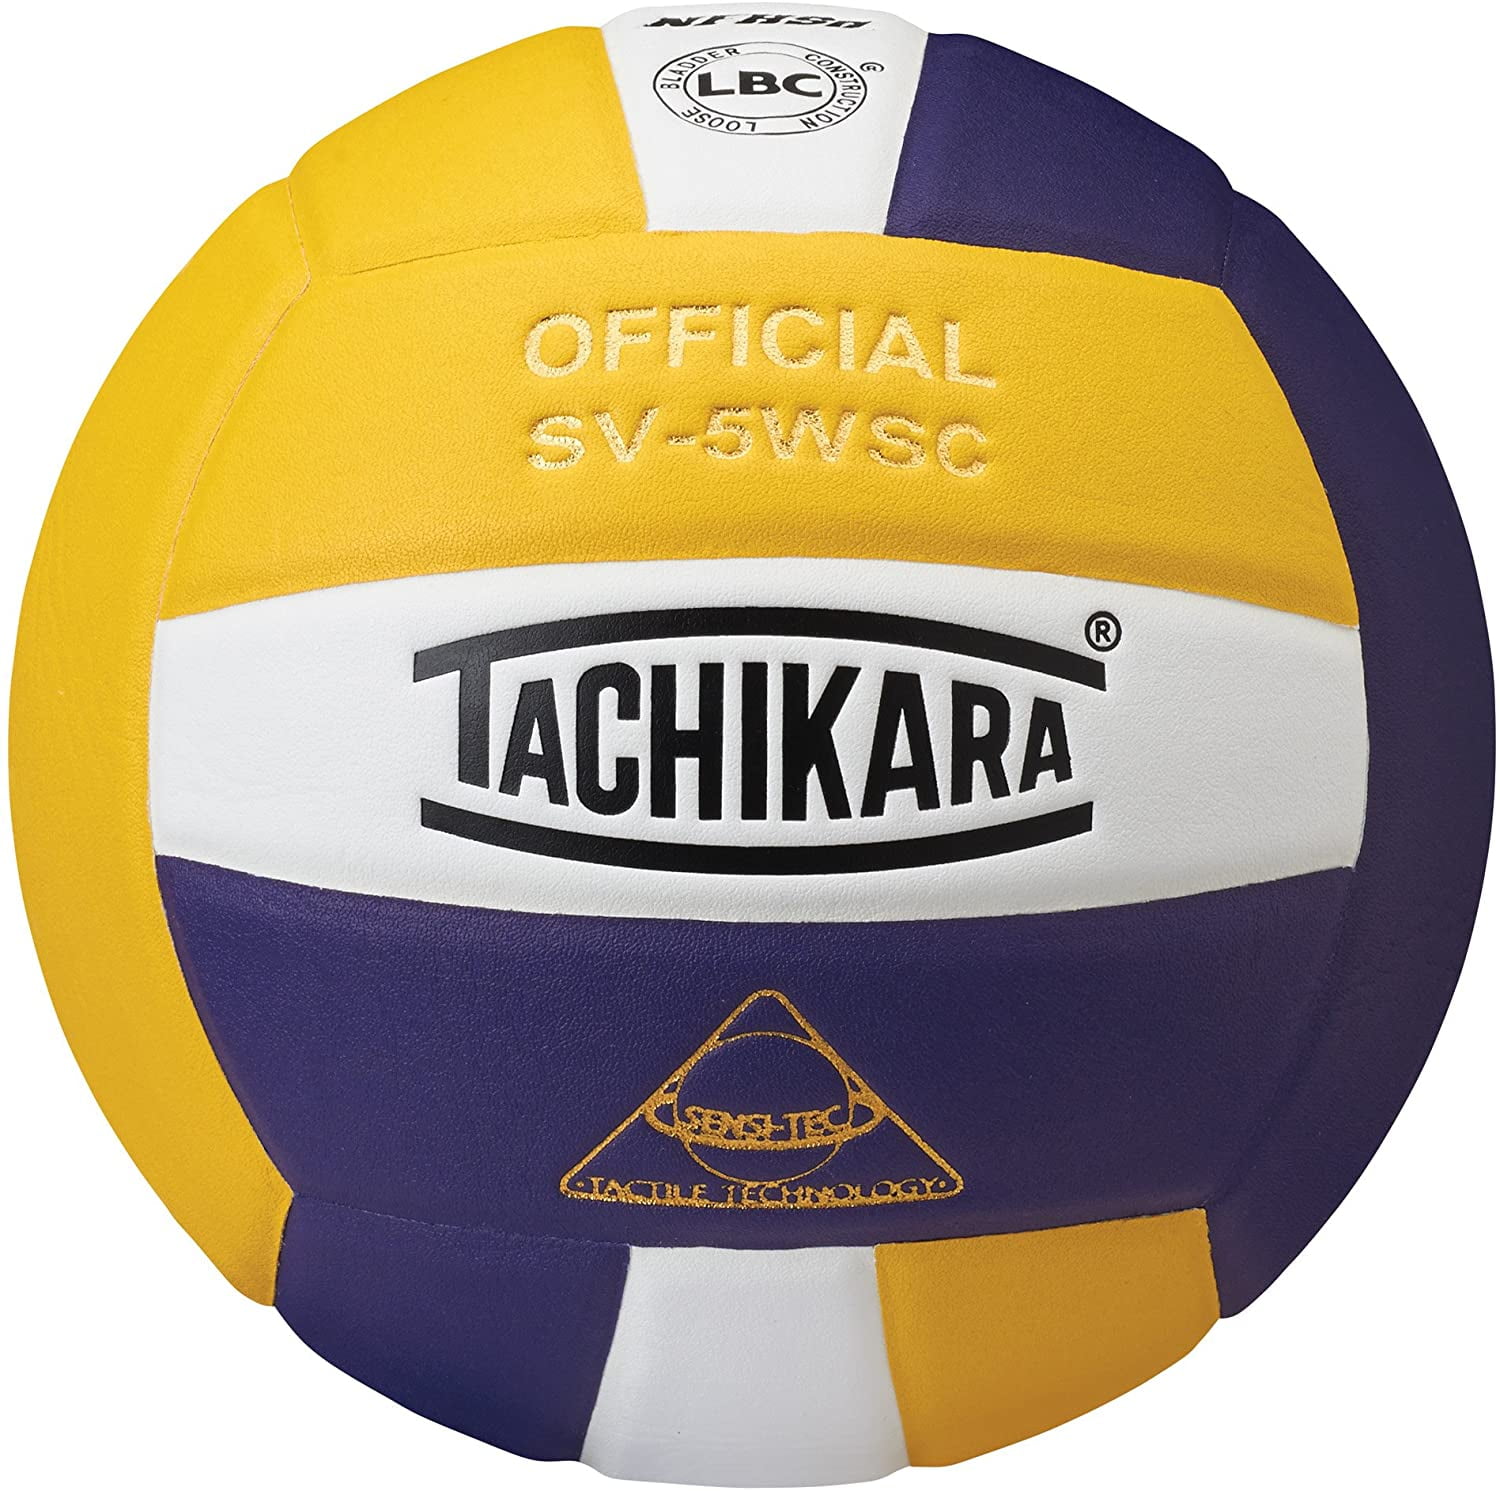 Tachikara SVMNC Volley-lite Volleyball Black/white USA for sale online 